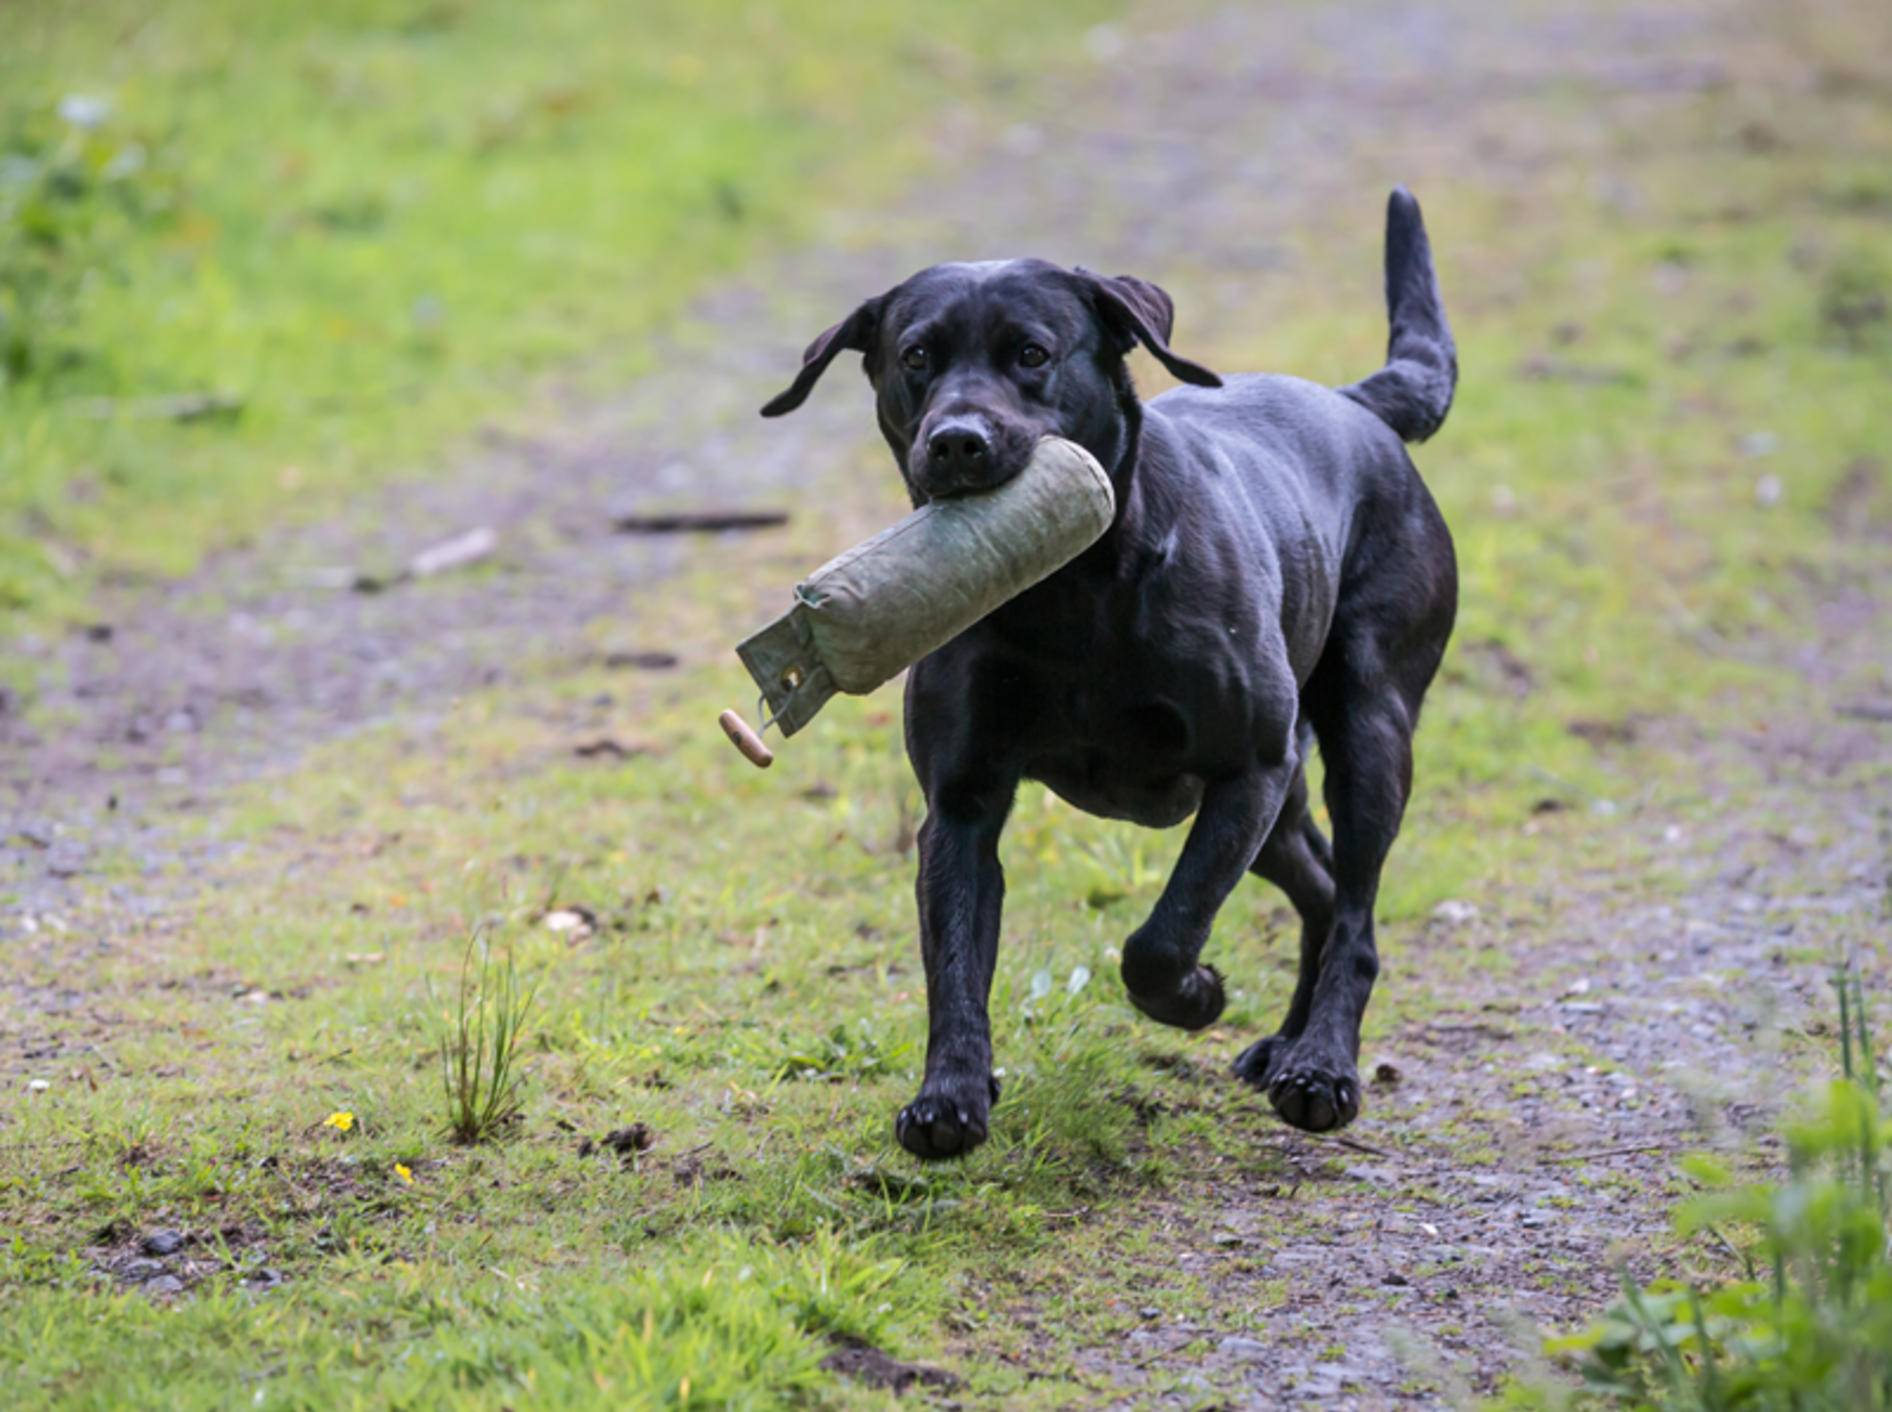 Dummytraining und Apportieren machen diesem Labrador einen Riesenspaß! – Shutterstock / Daz Stock